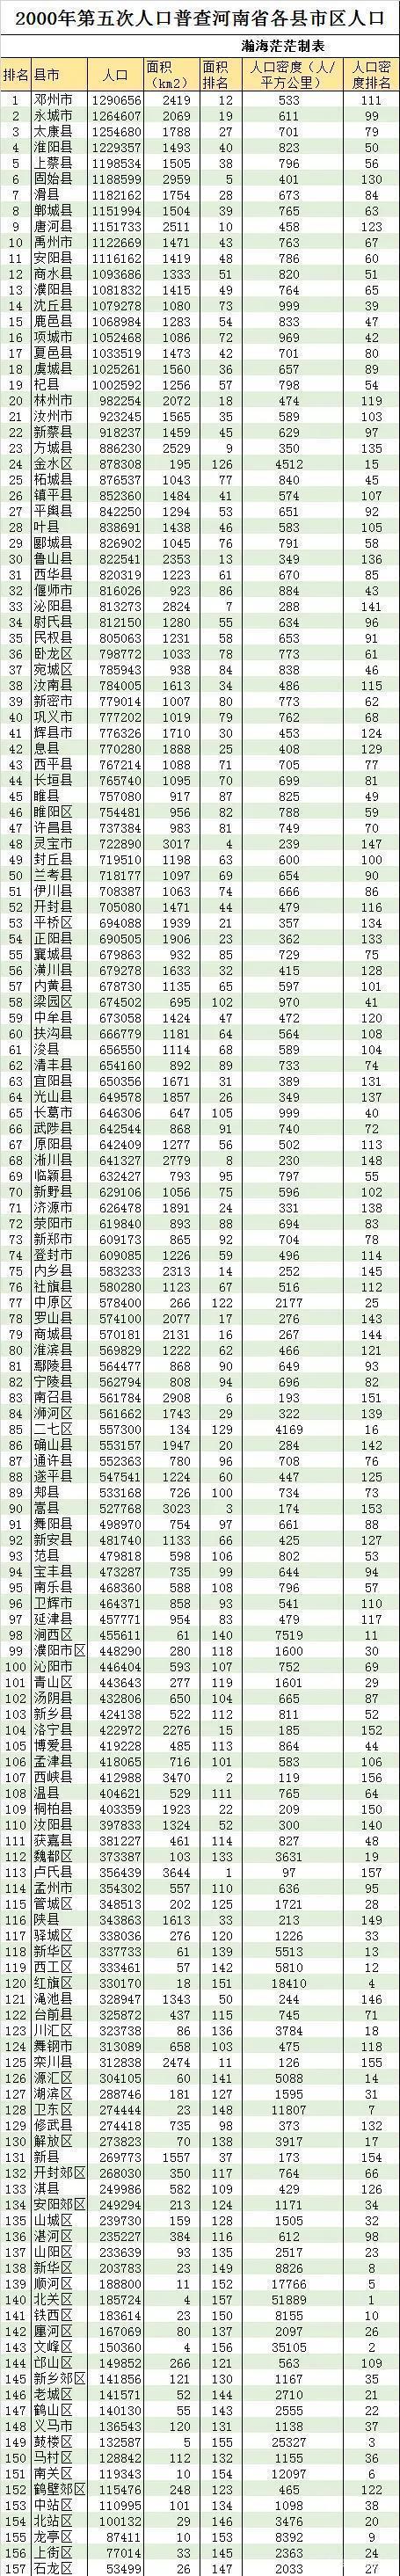 2000年五普河南省各县市区人口排名邓州重回第一名